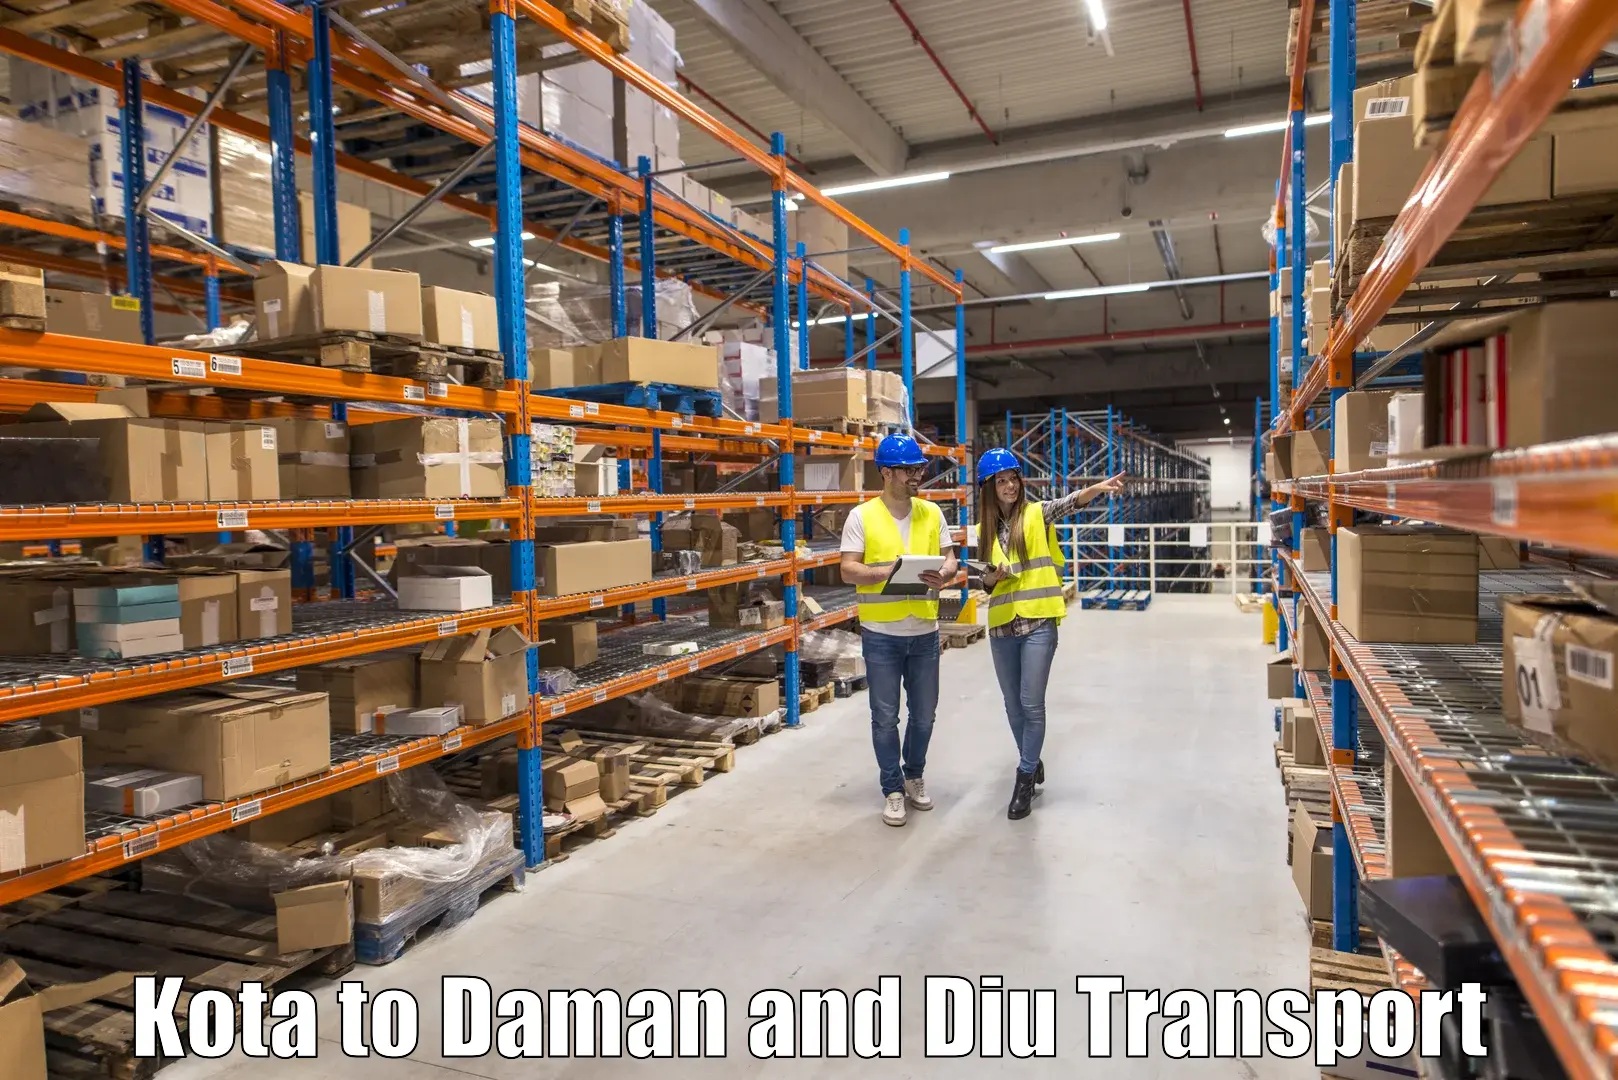 Logistics transportation services Kota to Daman and Diu